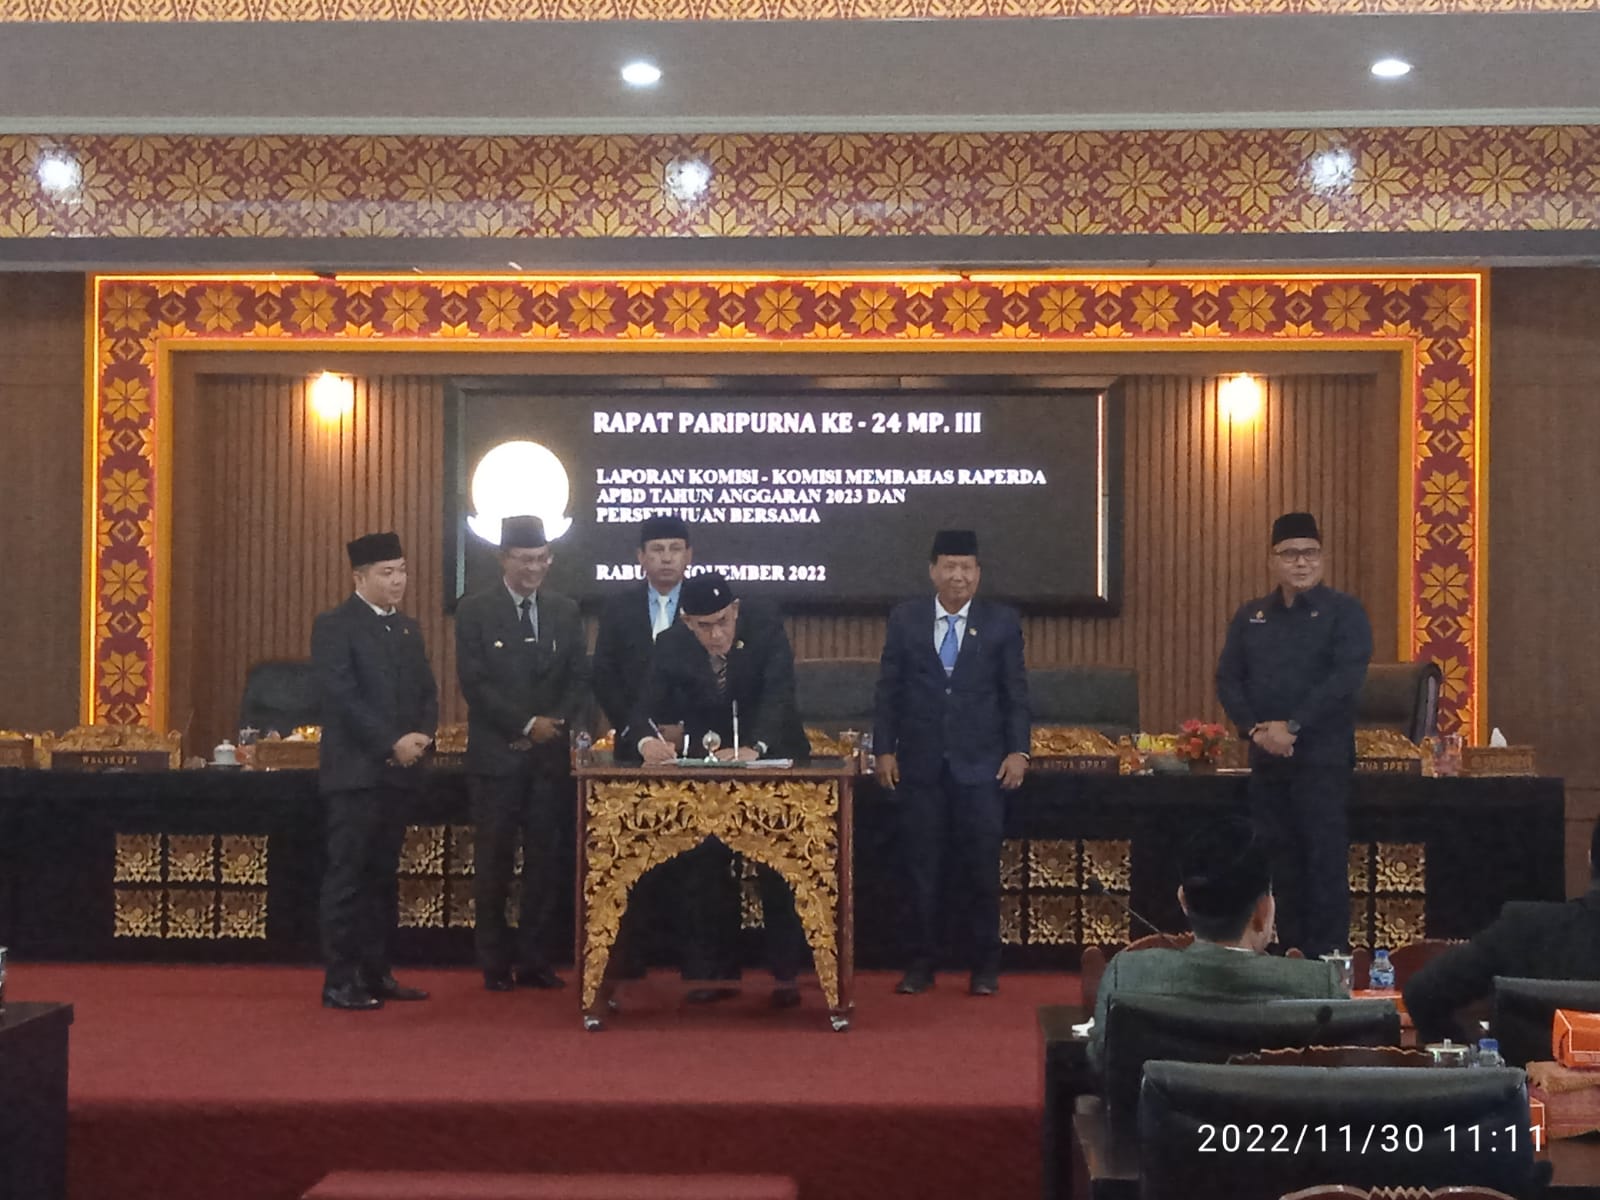 Rapat Paripurna DPRD Kota Palembang ke-24 Masa Persidangan III, Rabu (30/11/2022)